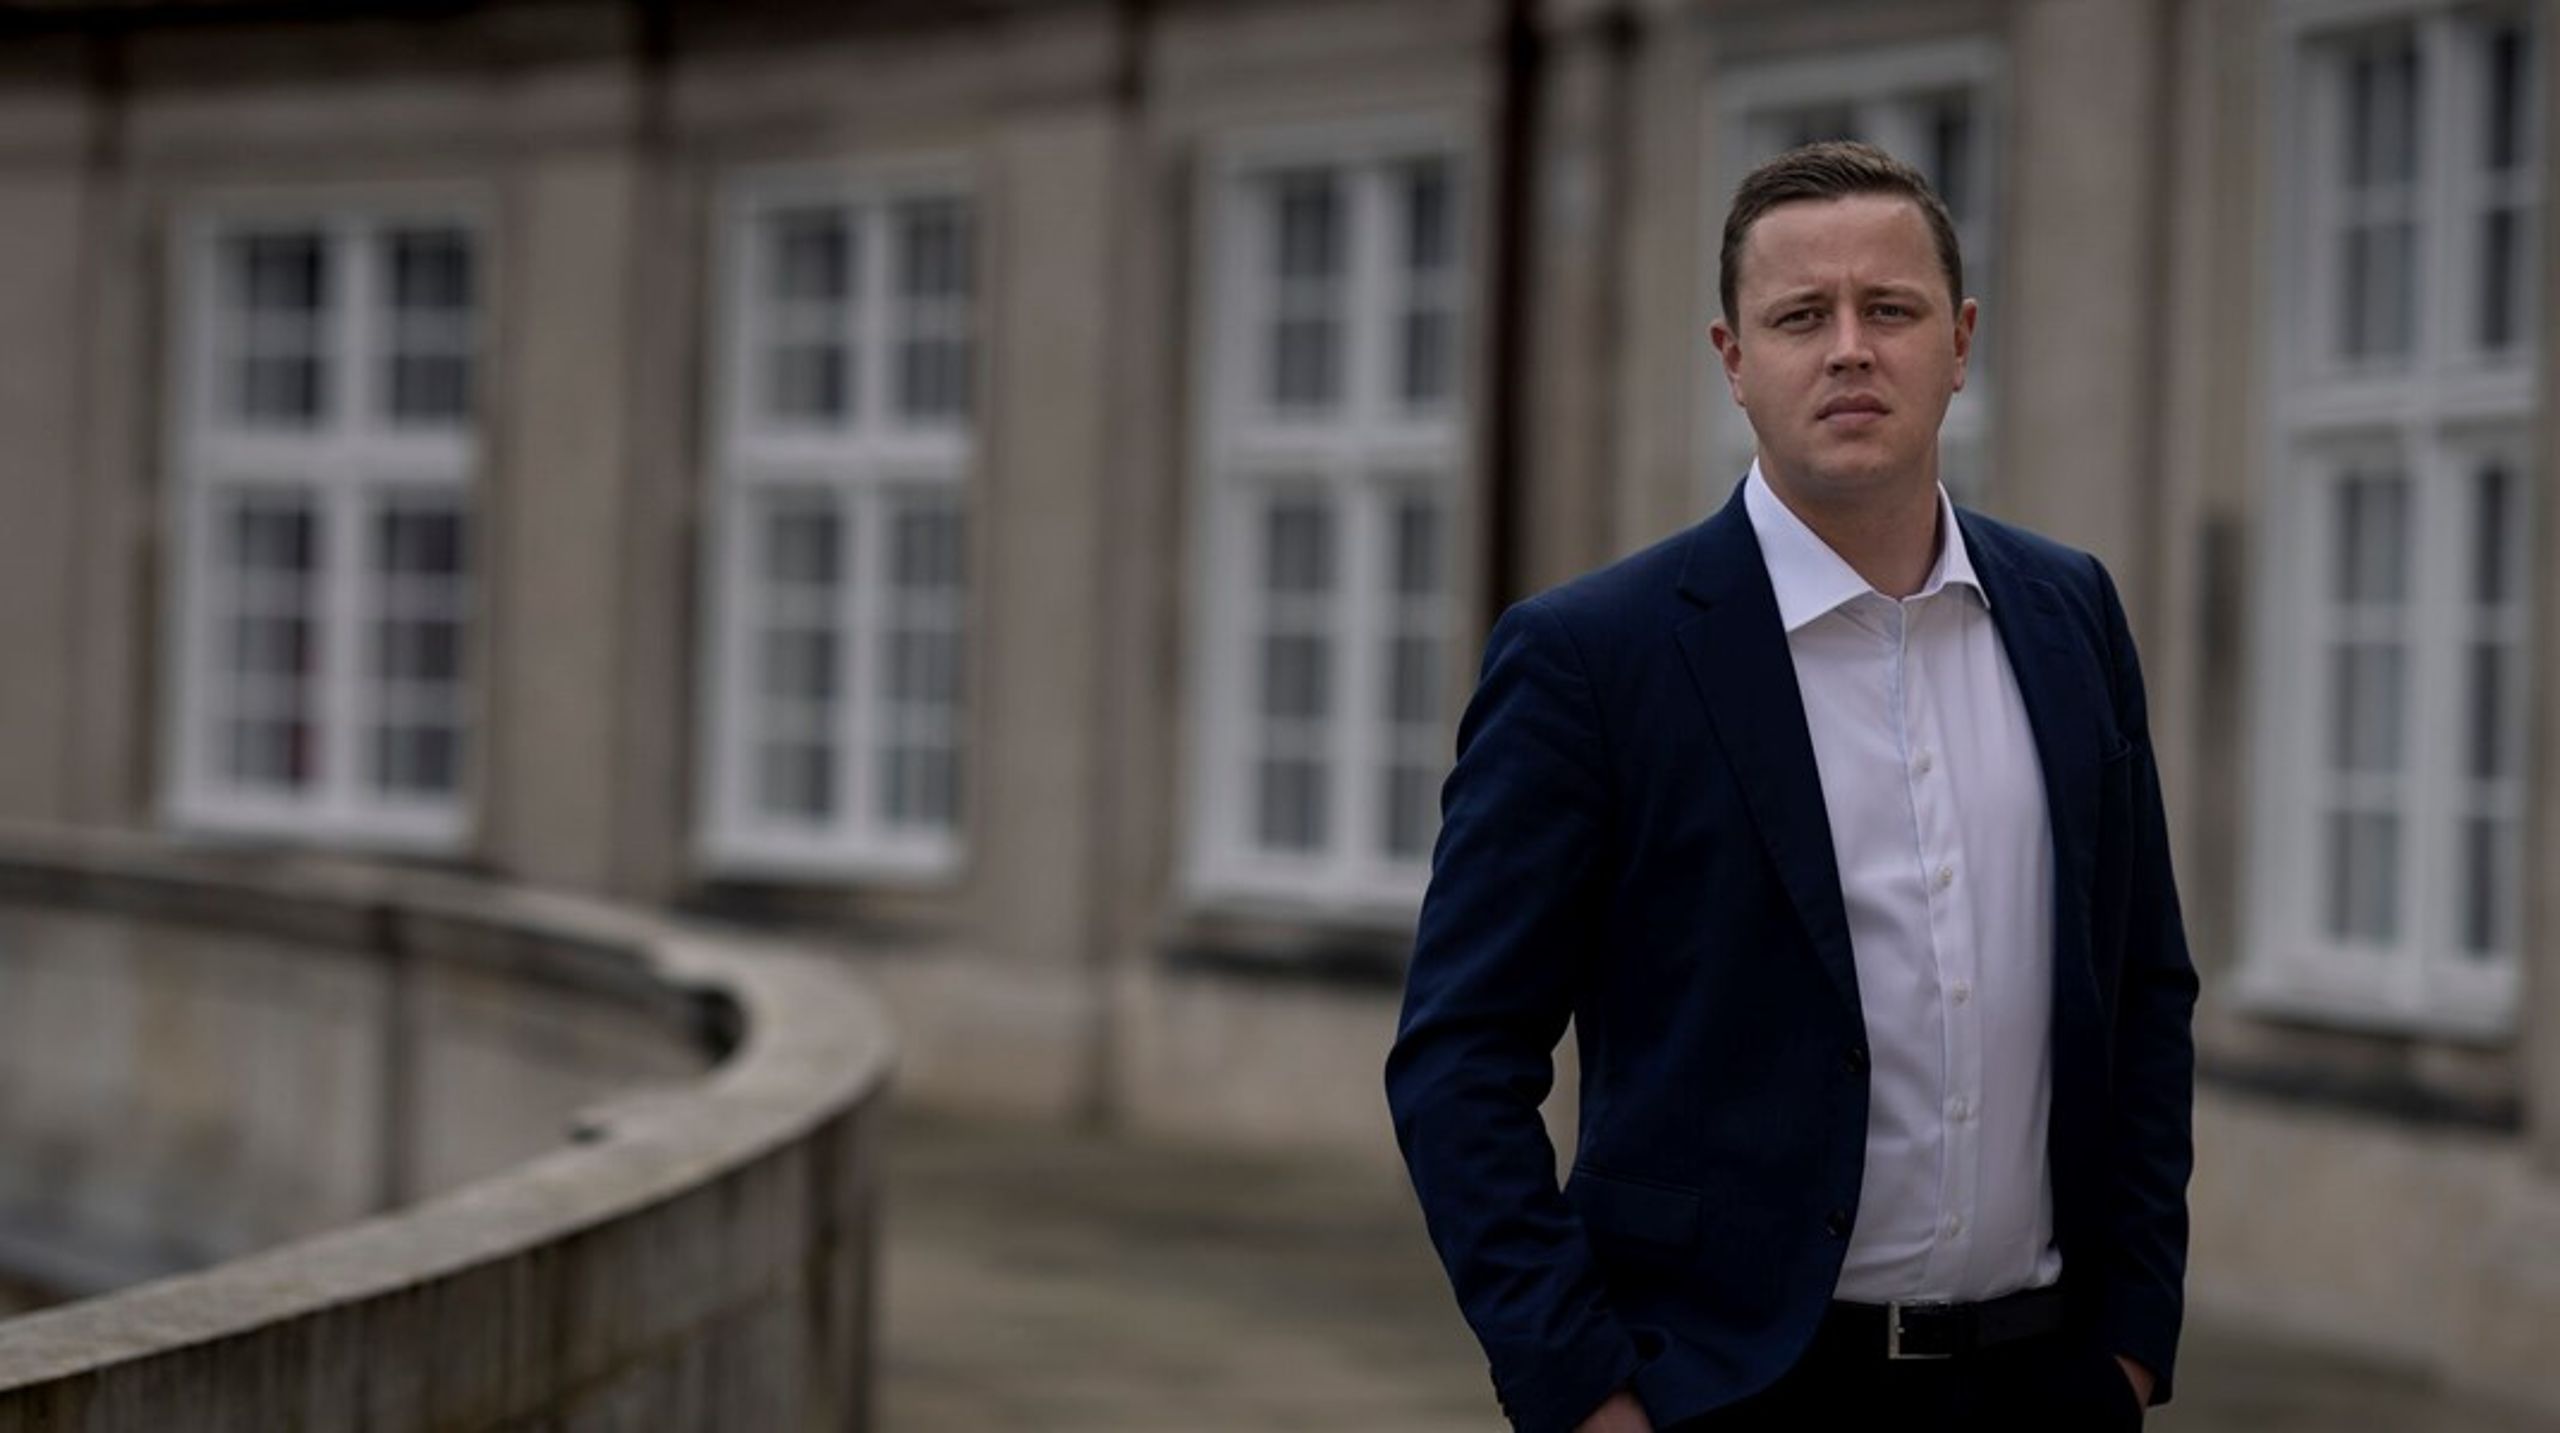 30-årige Mads Korsholm blev hentet ind som kampagnechef i Liberal Alliance i 2021. I sidste uge blev han fyret. Nu har Dansk Folkeparti ansat ham i en nyoprettet stilling.